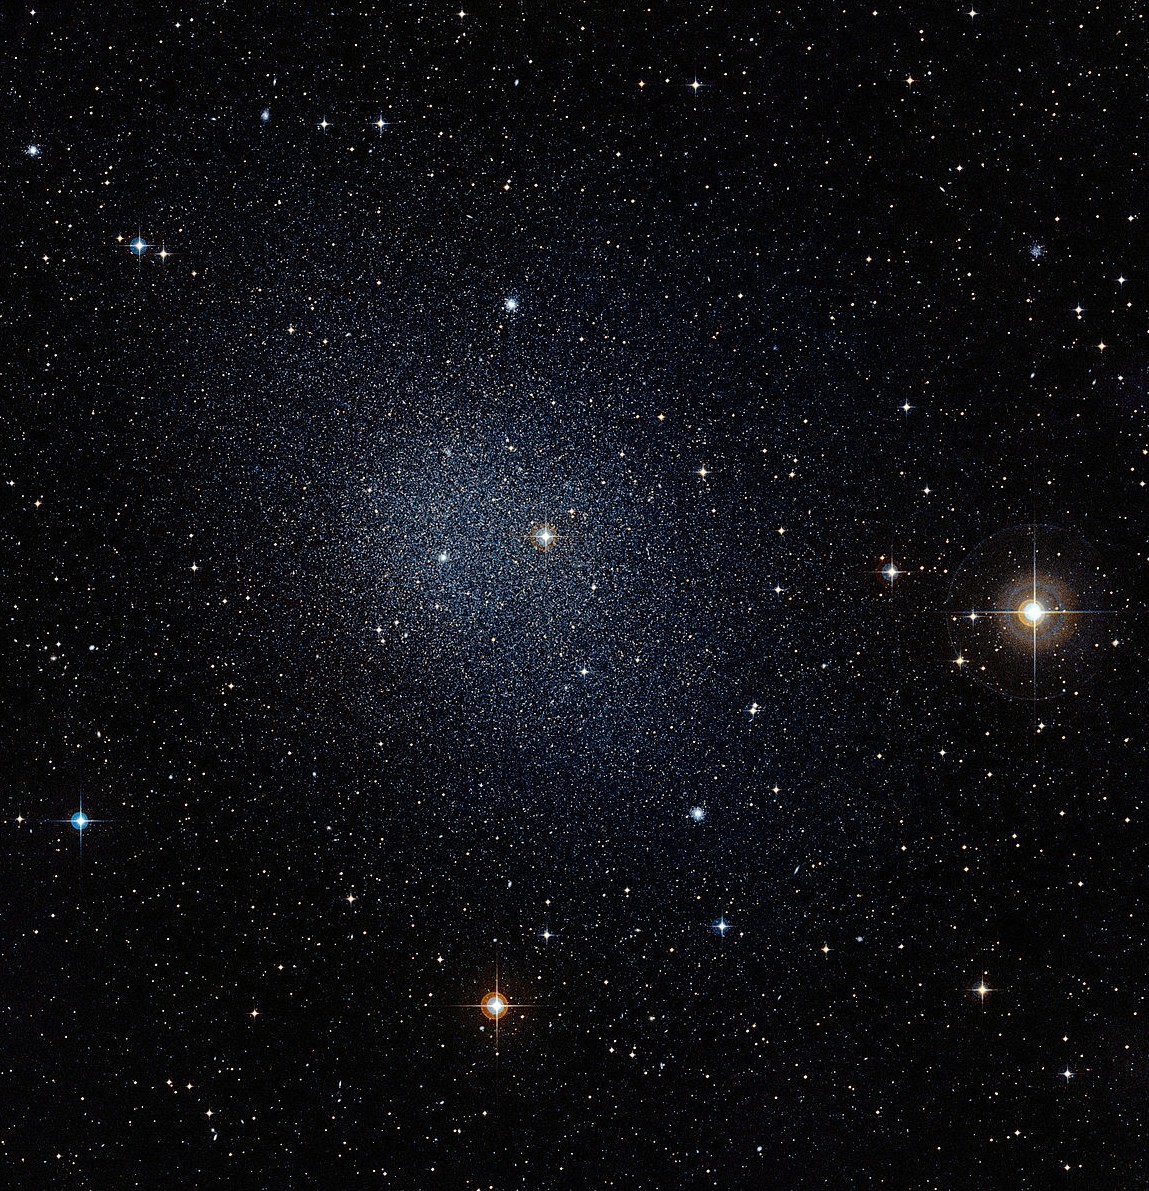 Fornax dwarf spheroidal galaxy